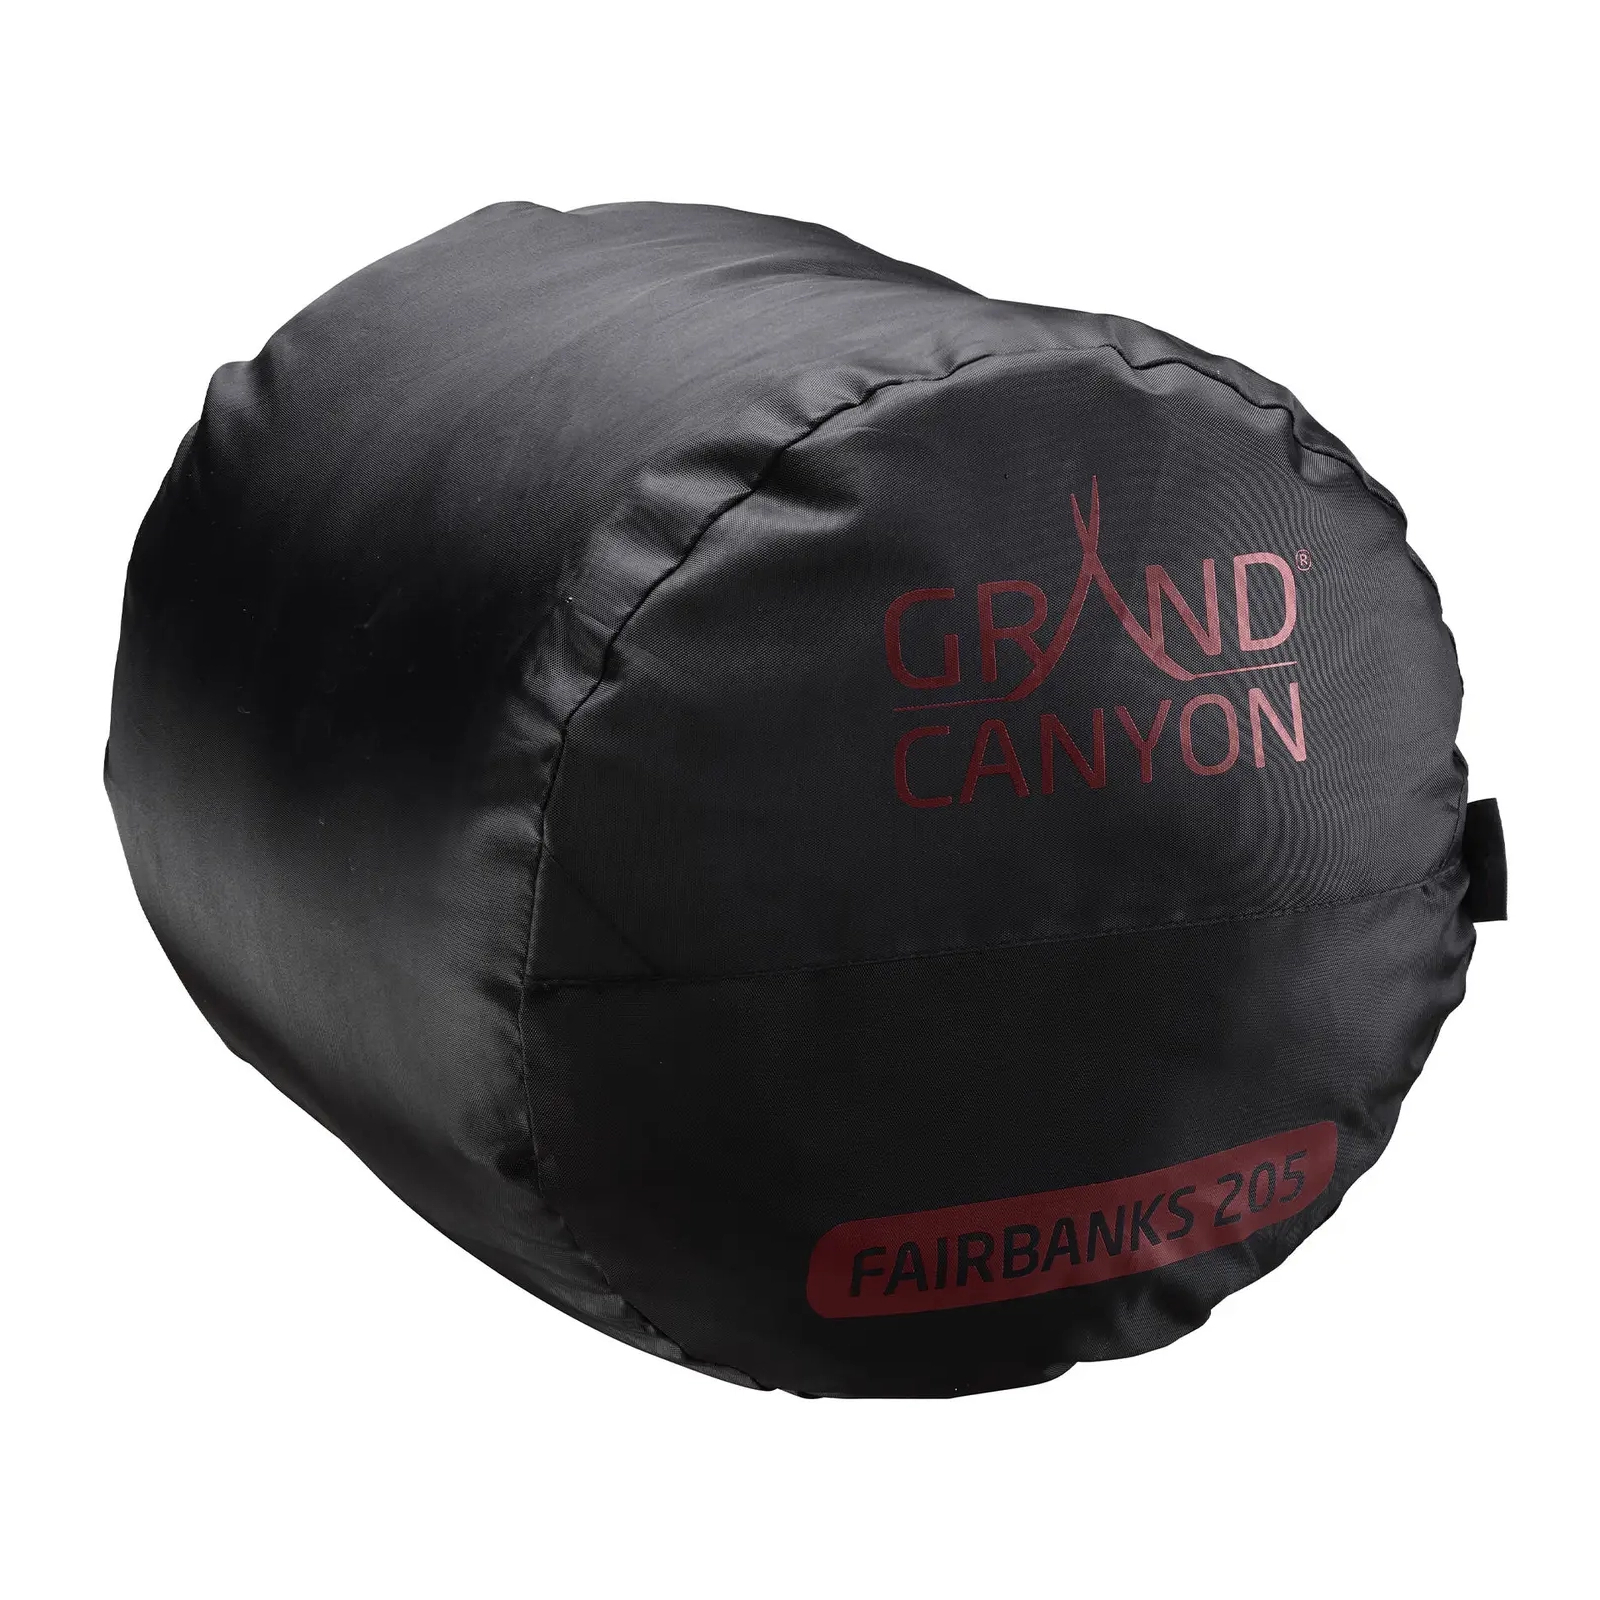 Спальный мешок Grand Canyon Fairbanks 205 -4°C Red Dahlia Left (340009) изображение 4